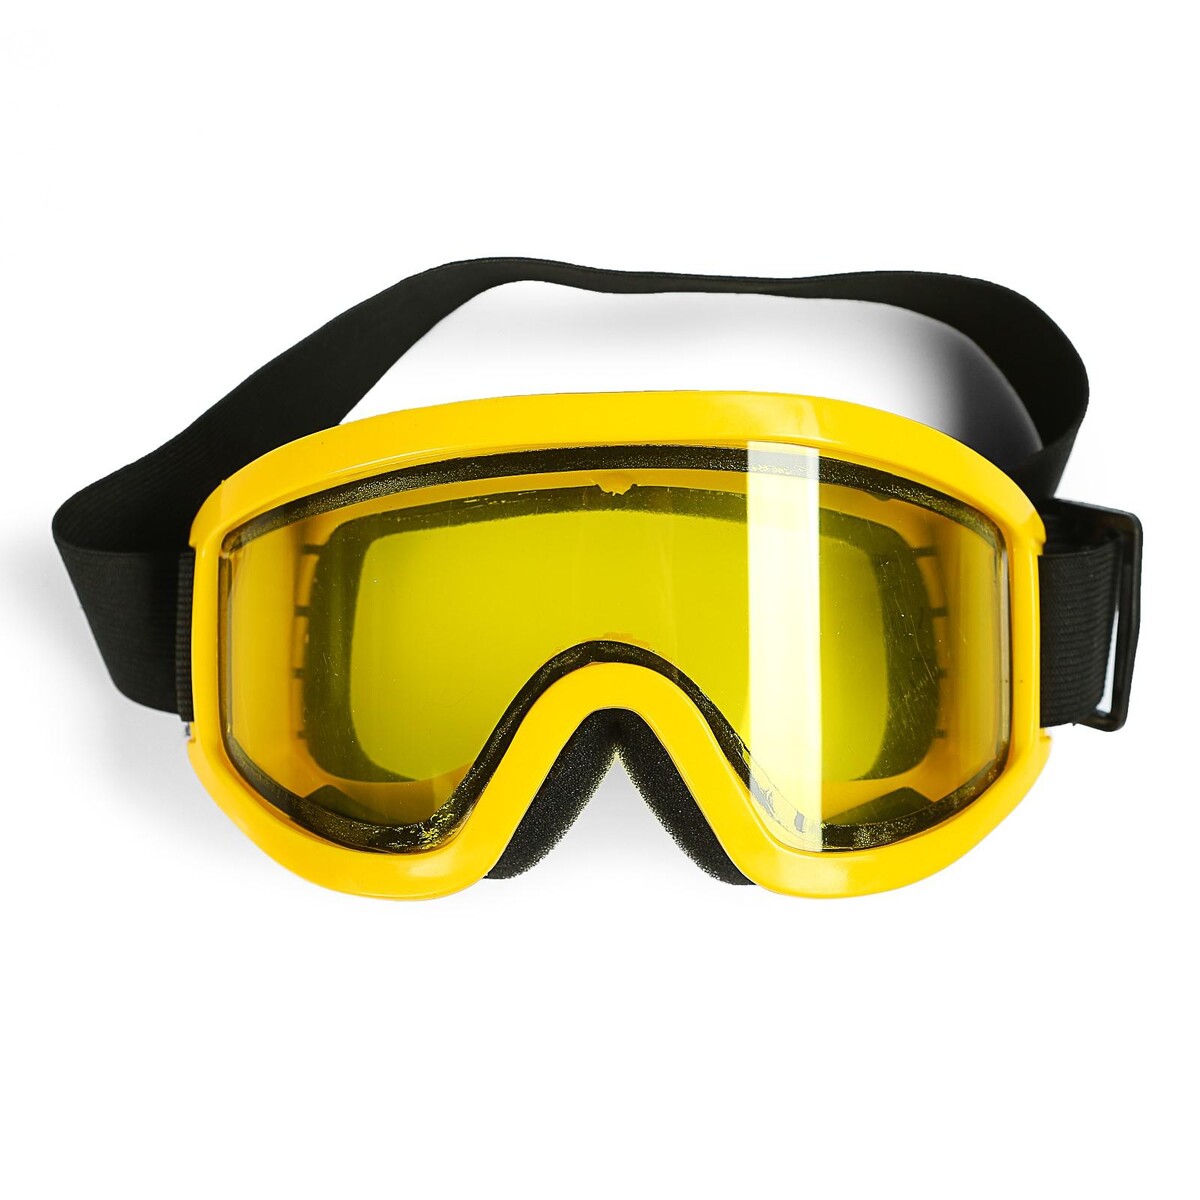 Очки-маска для езды на мототехнике, стекло двухслойное желтое, цвет желтый очки маска для езды на мототехнике разборные визор желтый